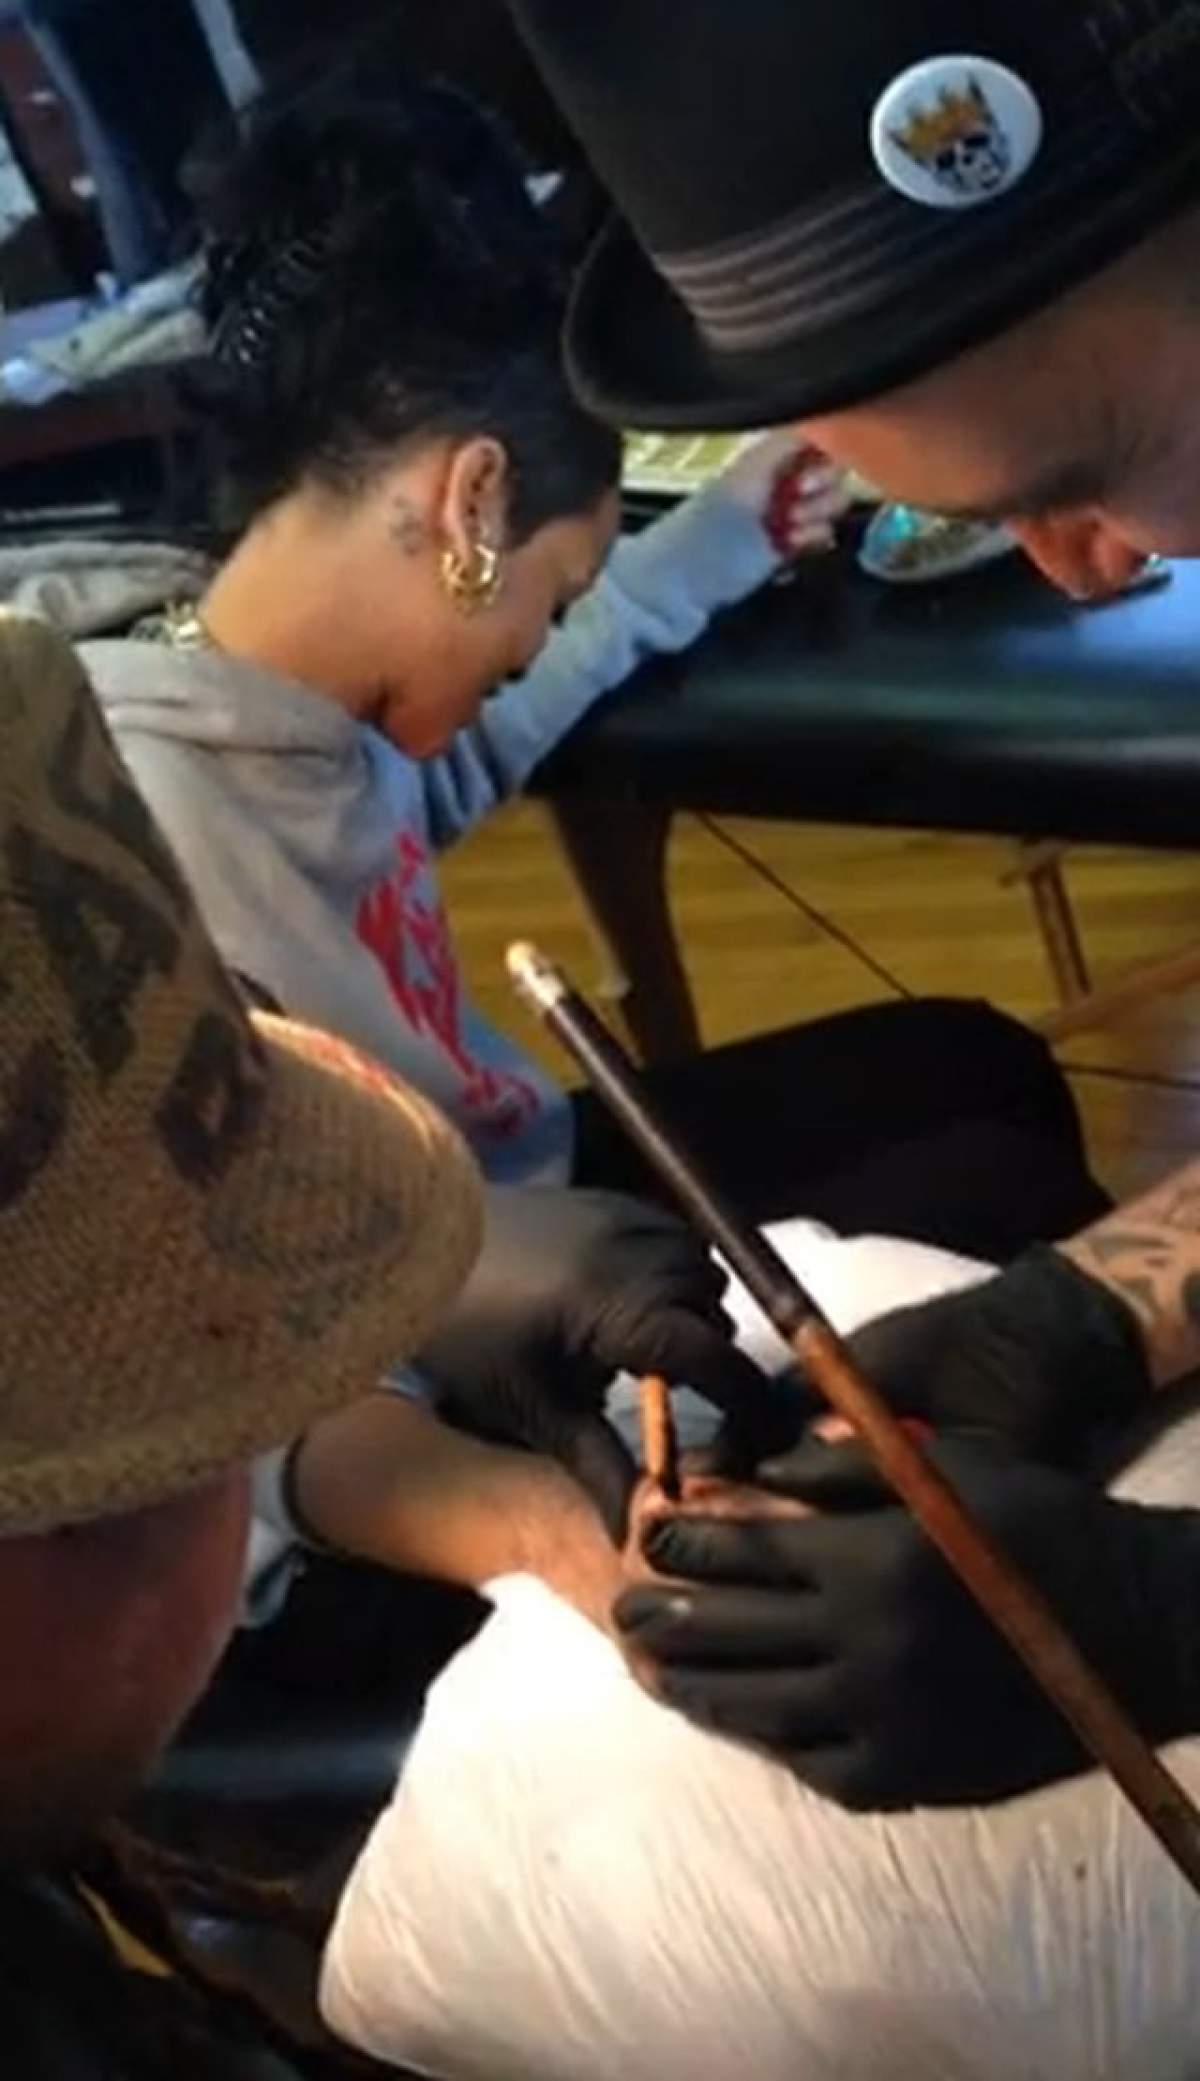 Rihanna este sado-masochistă!!! Şi-a făcut un tatuaj tradiţional cu daltă şi ciocan / VIDEO şocant